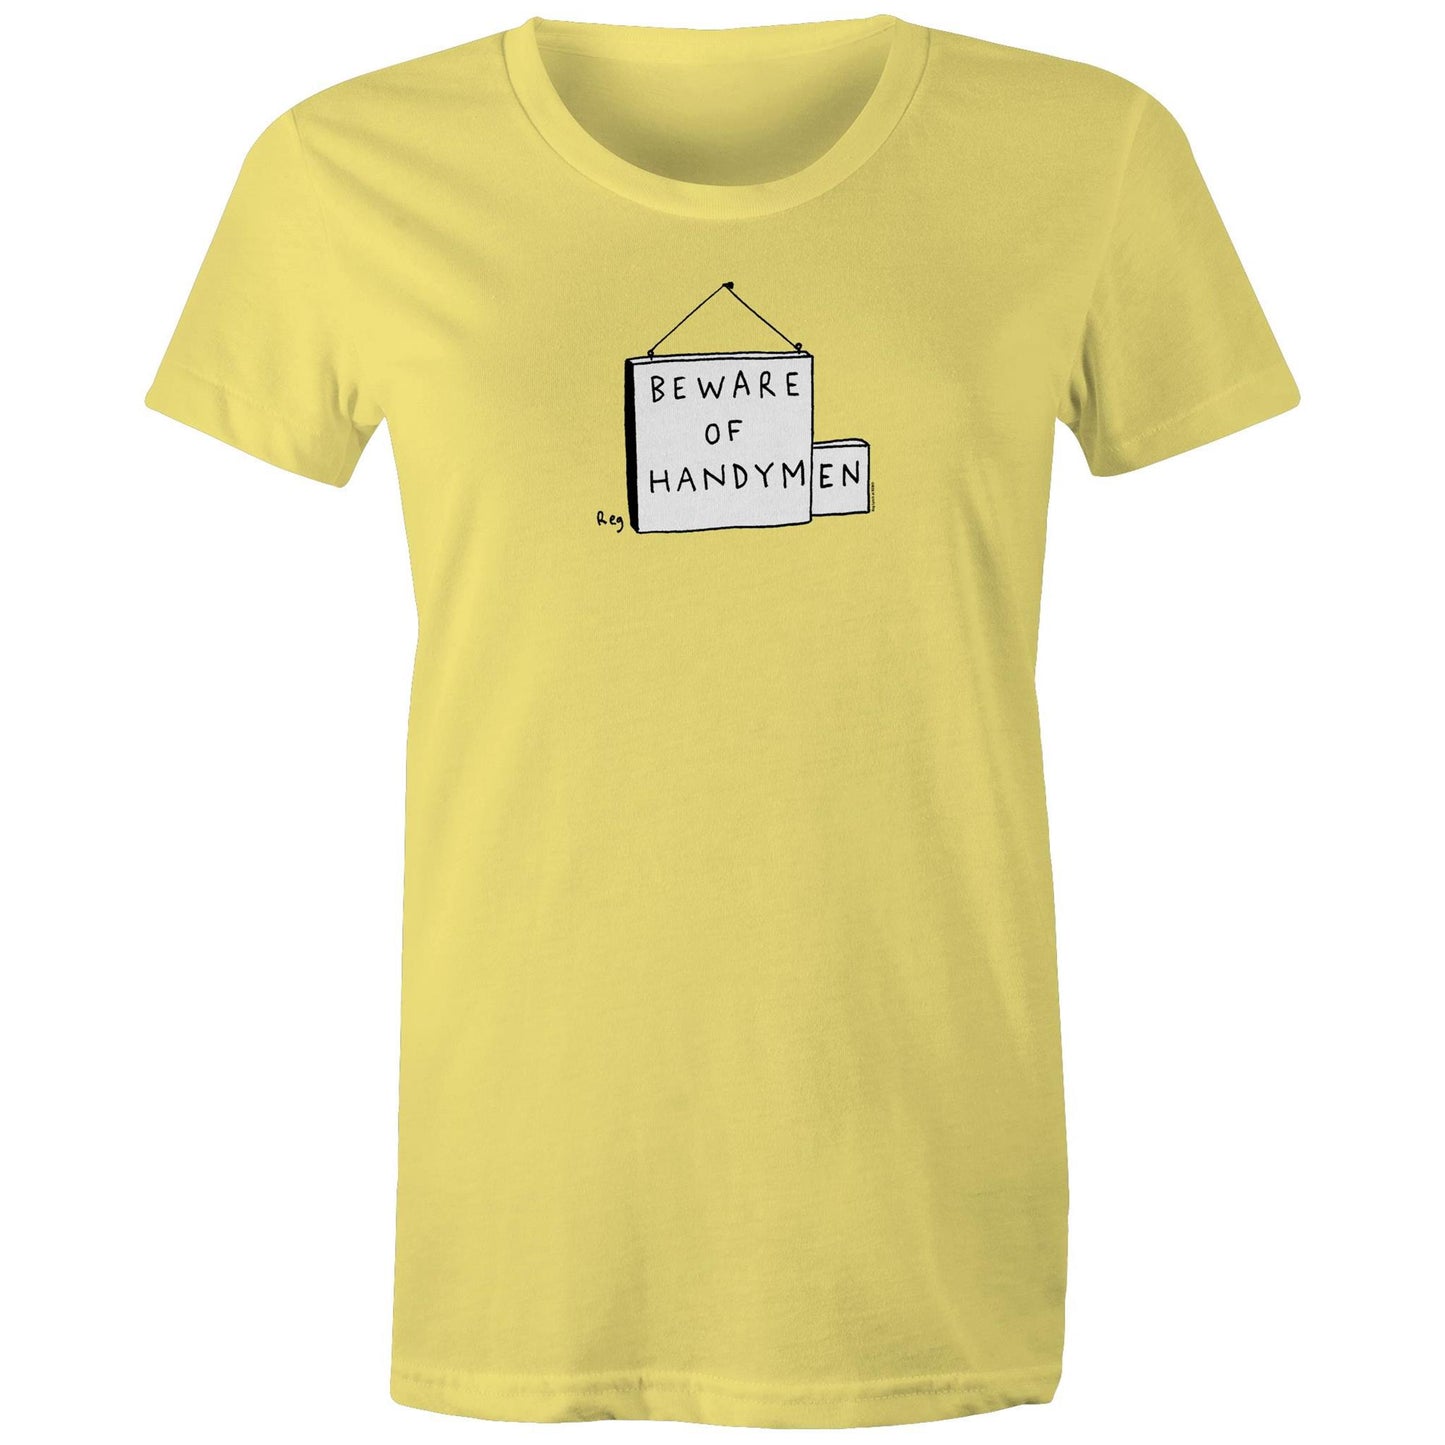 Handymen T Shirts for Women